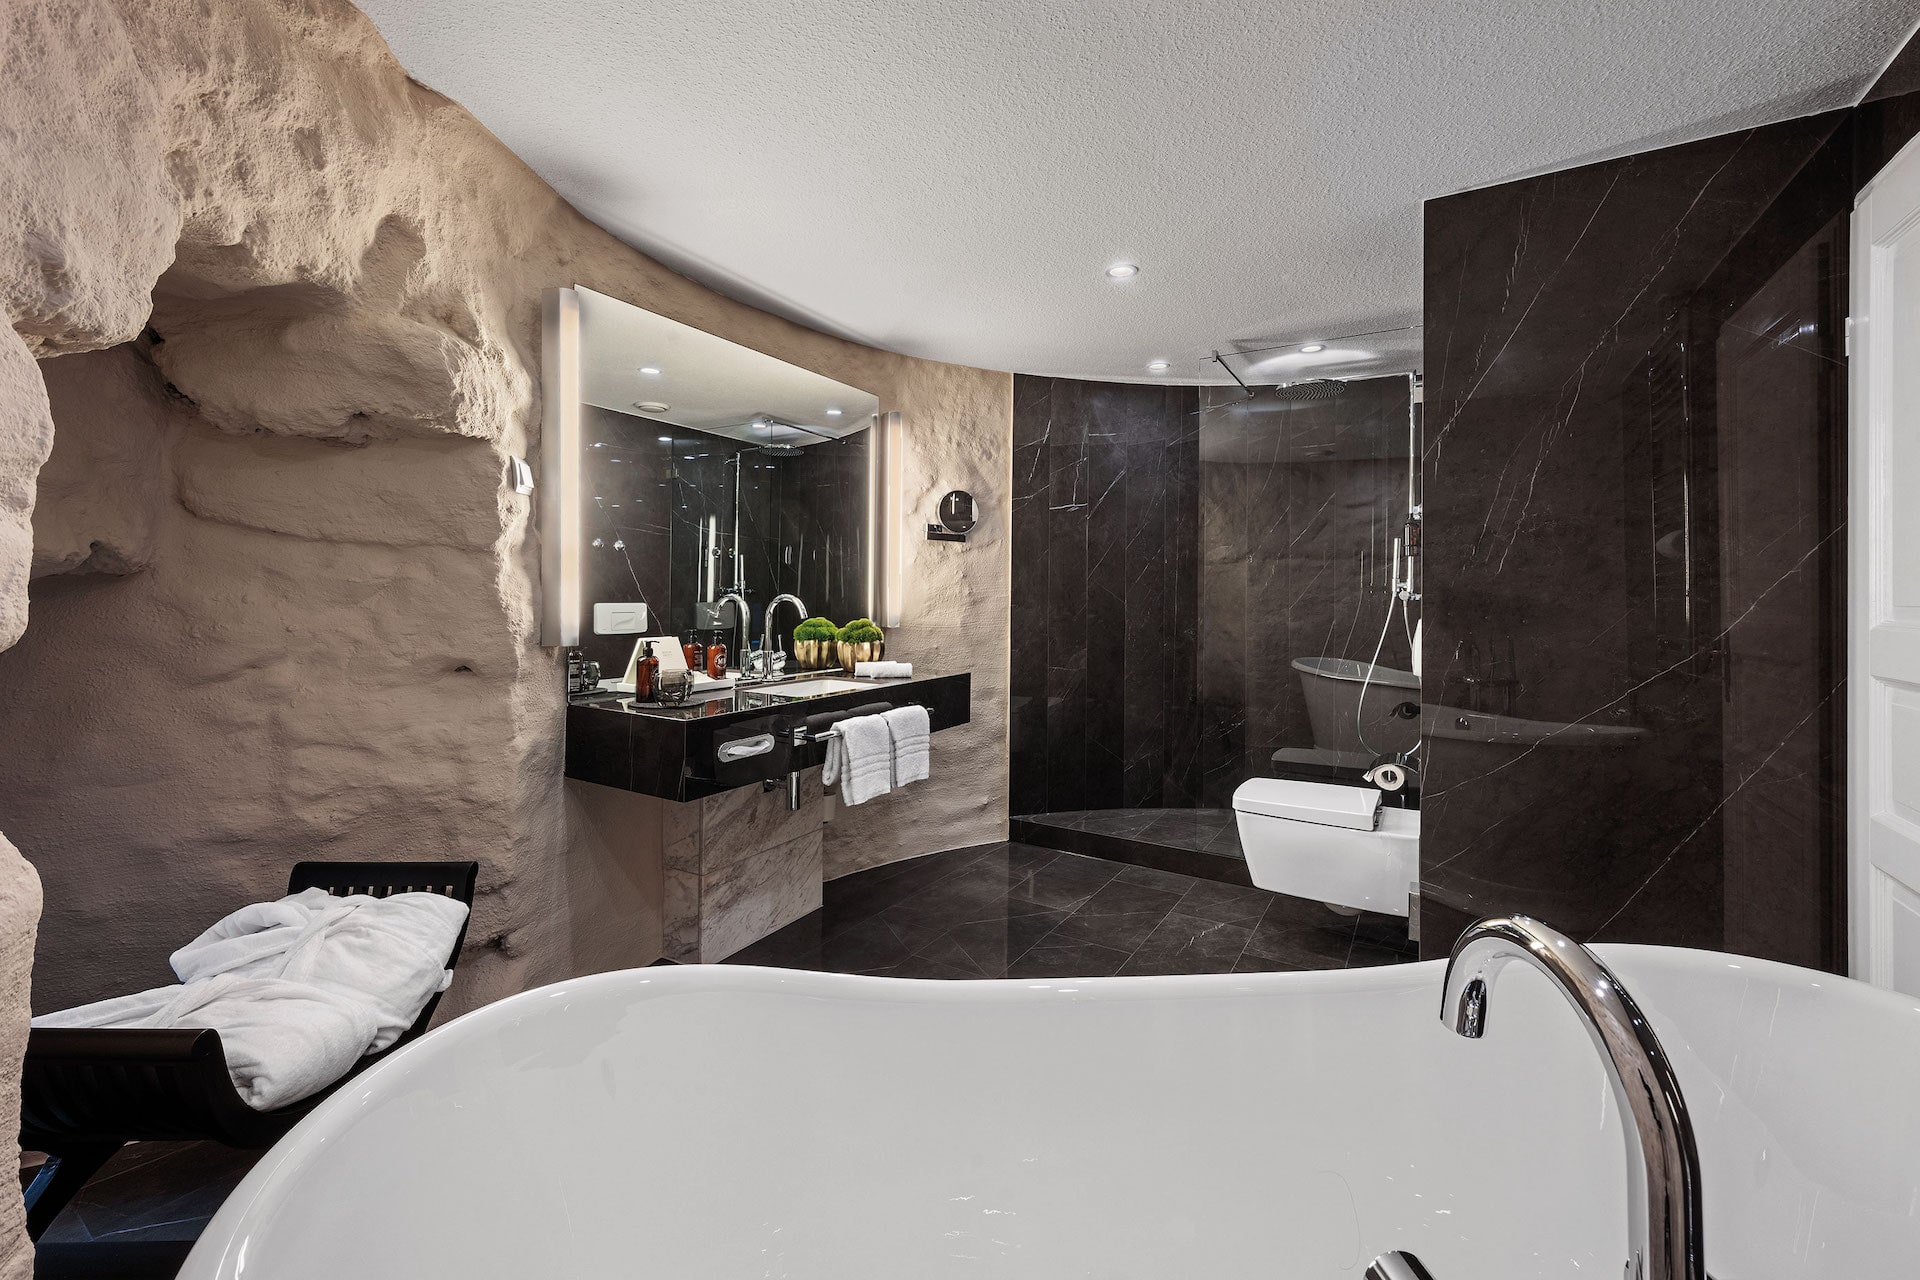 großzügiges badezimmer mit grotto flair burg hotel turmsuite parkhotel engelsburg sehenswürdigkeiten nrw